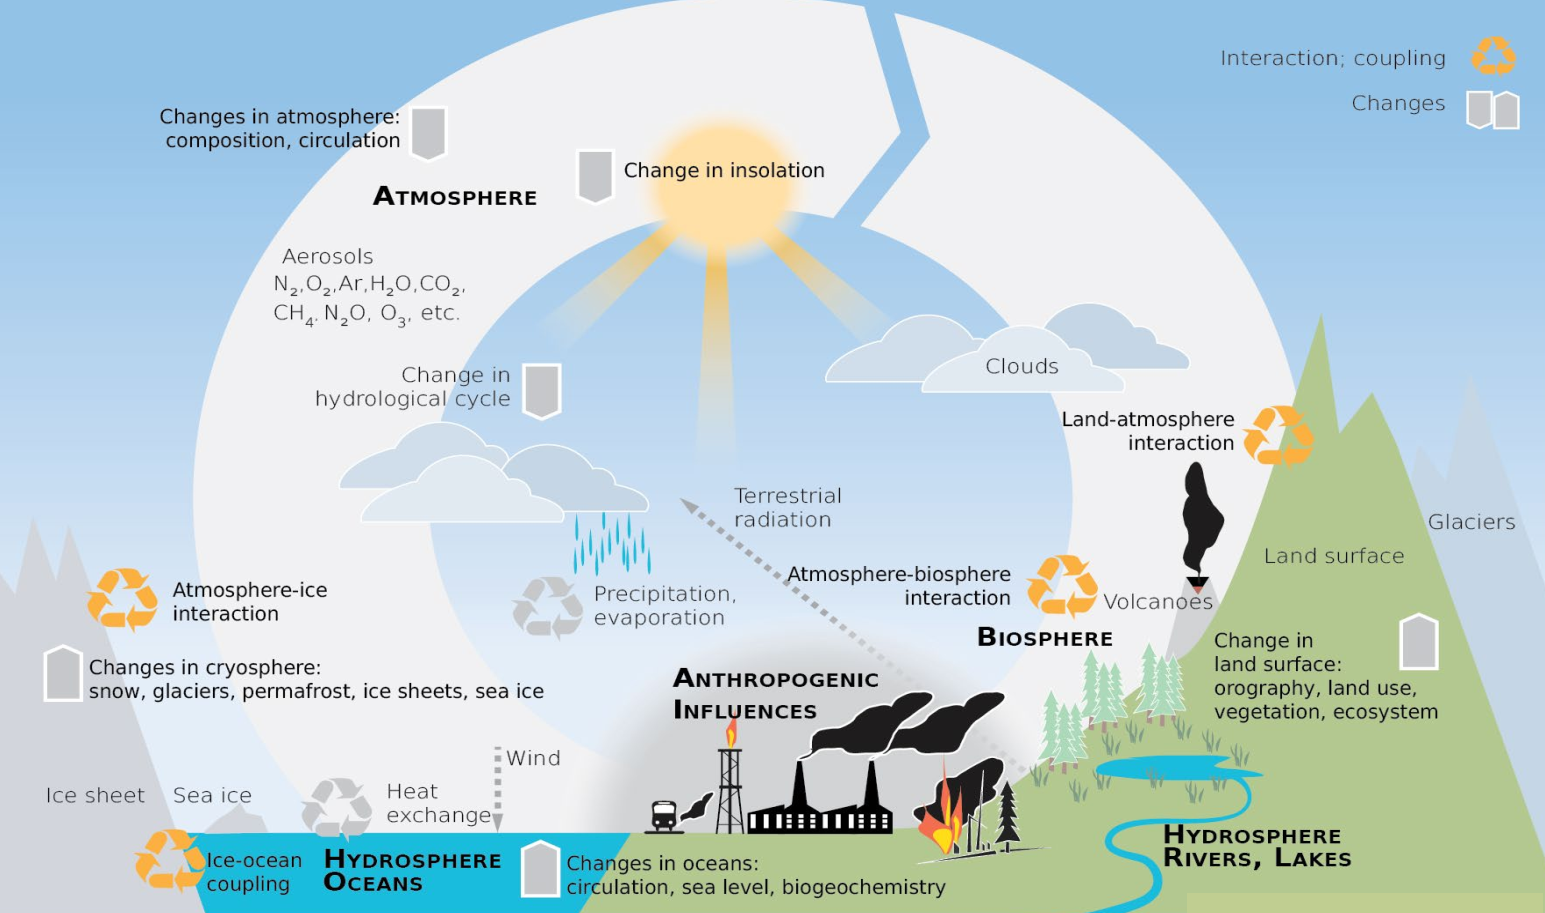 Perbedaan Prakiraan Iklim Dengan Proyeksi Iklim Dalam Terminologi Perubahan Iklim